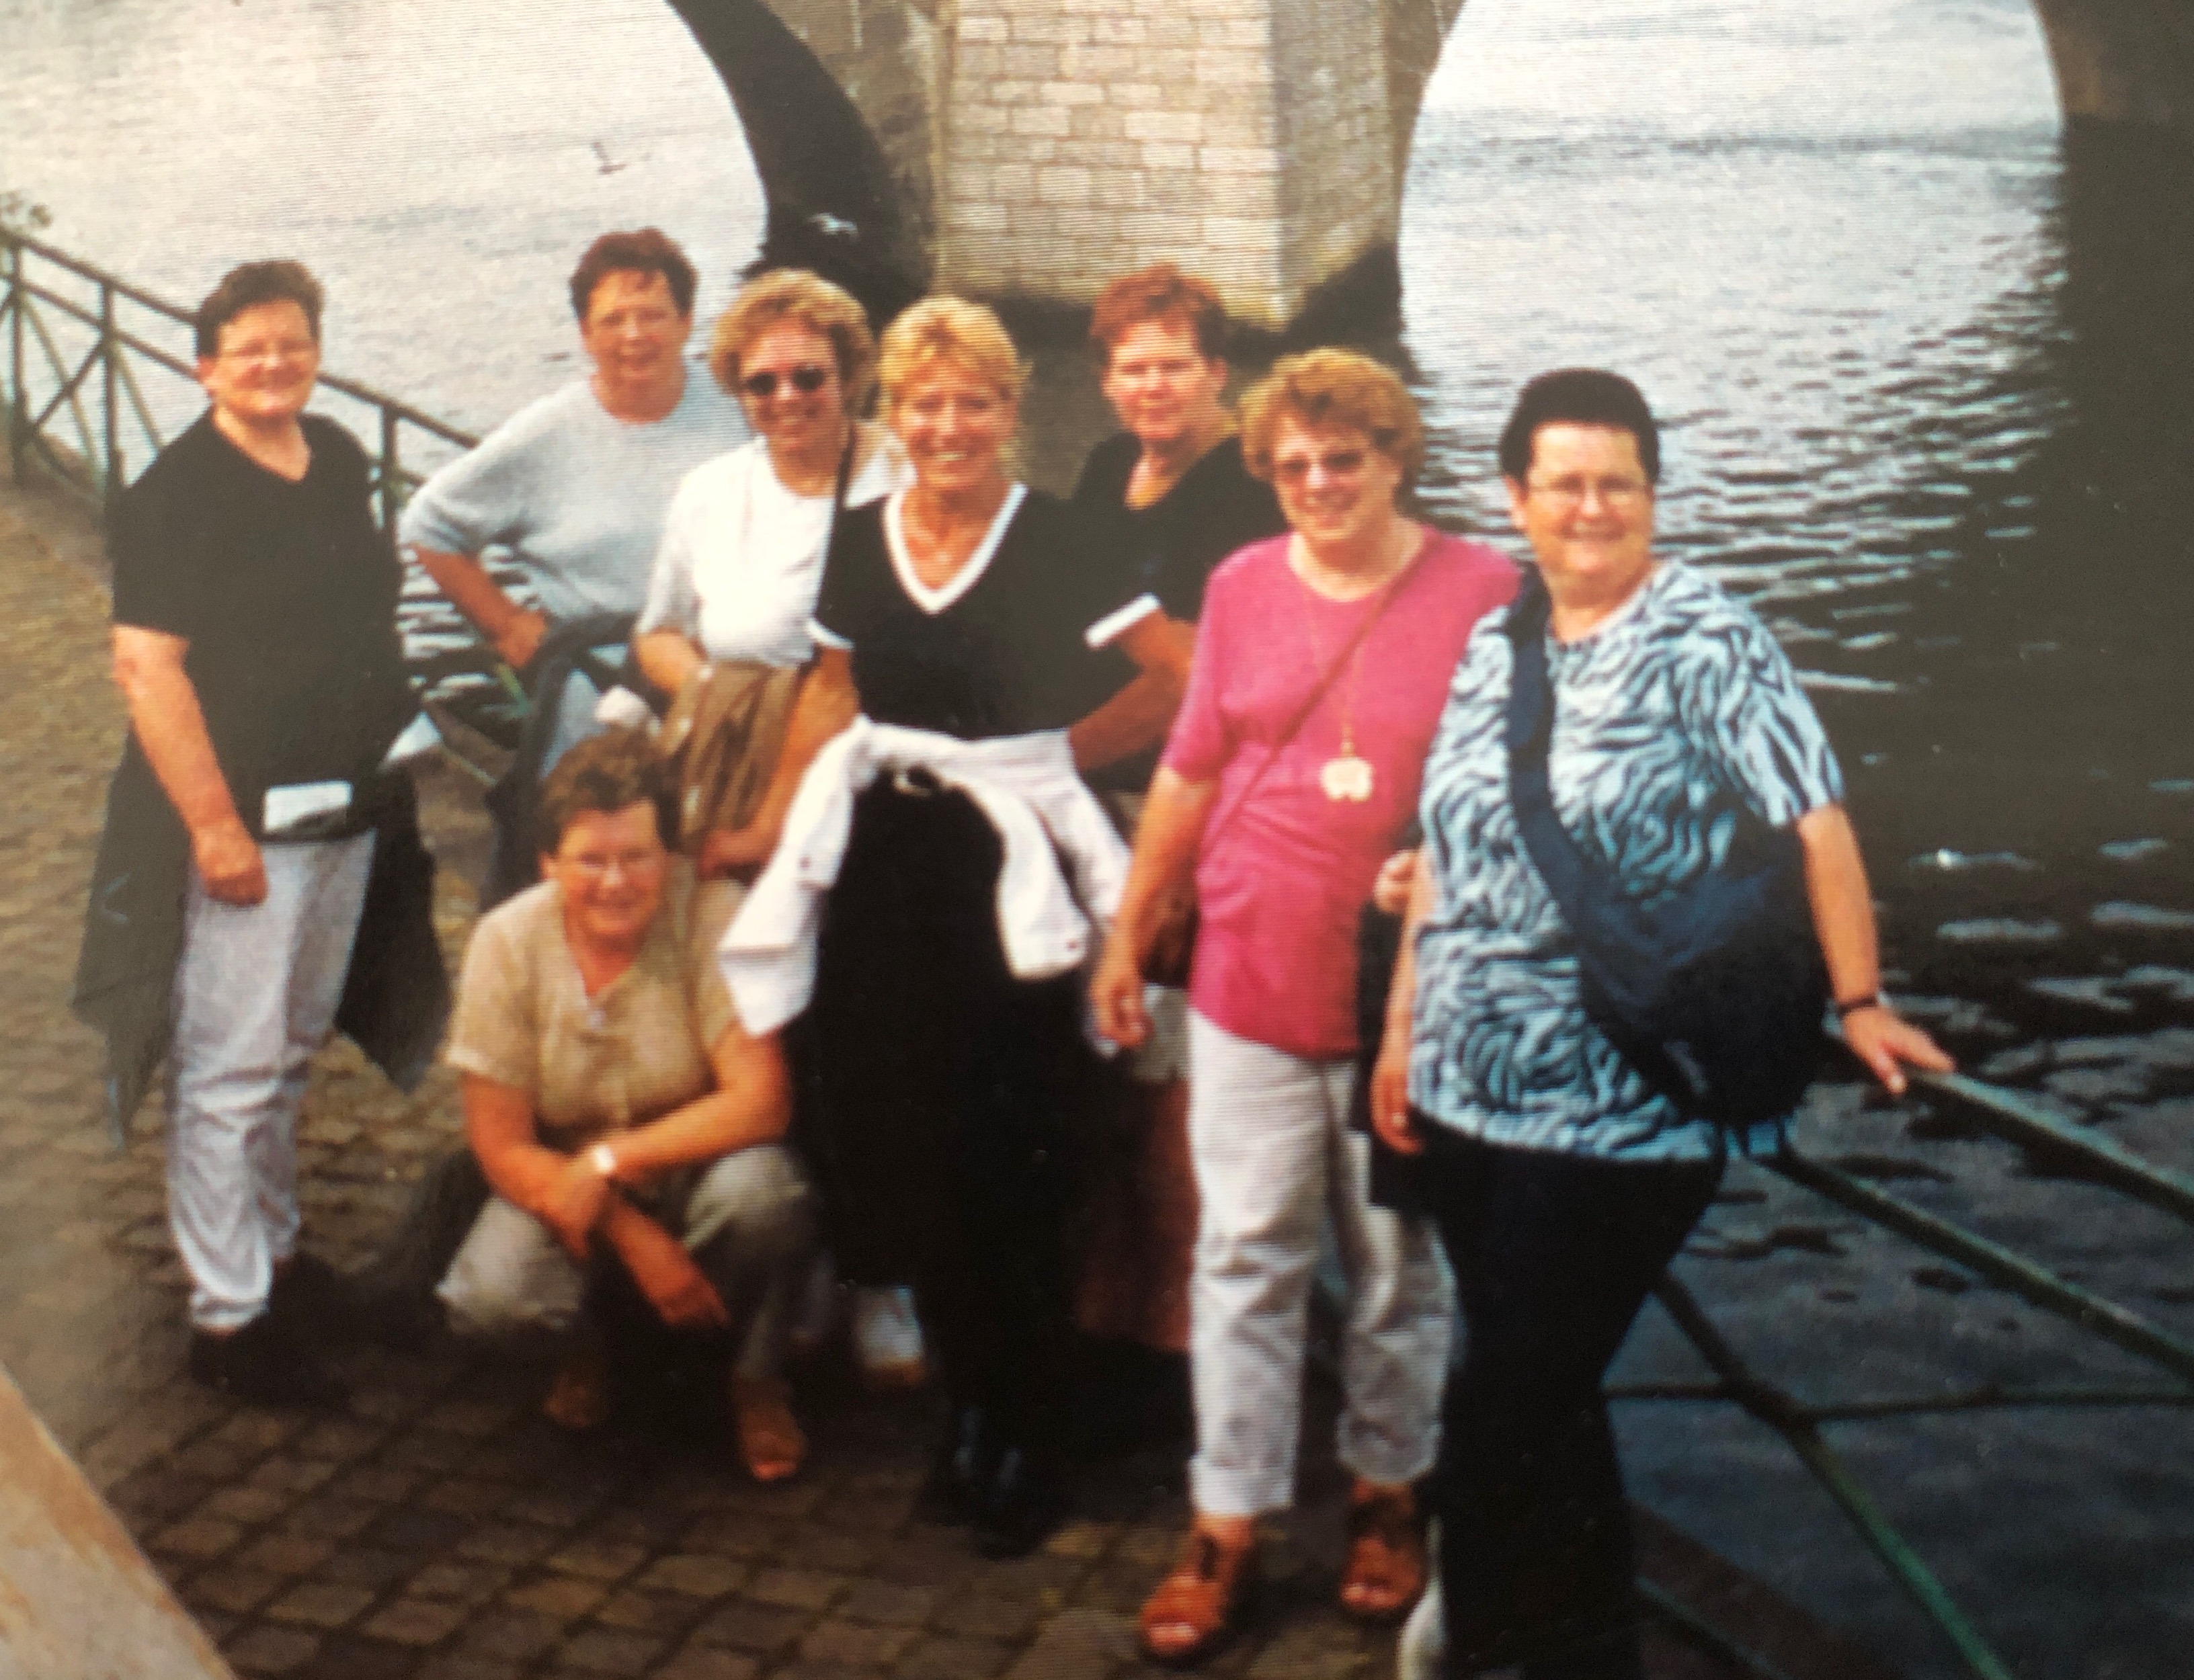 Zussendag
Maastricht 2002